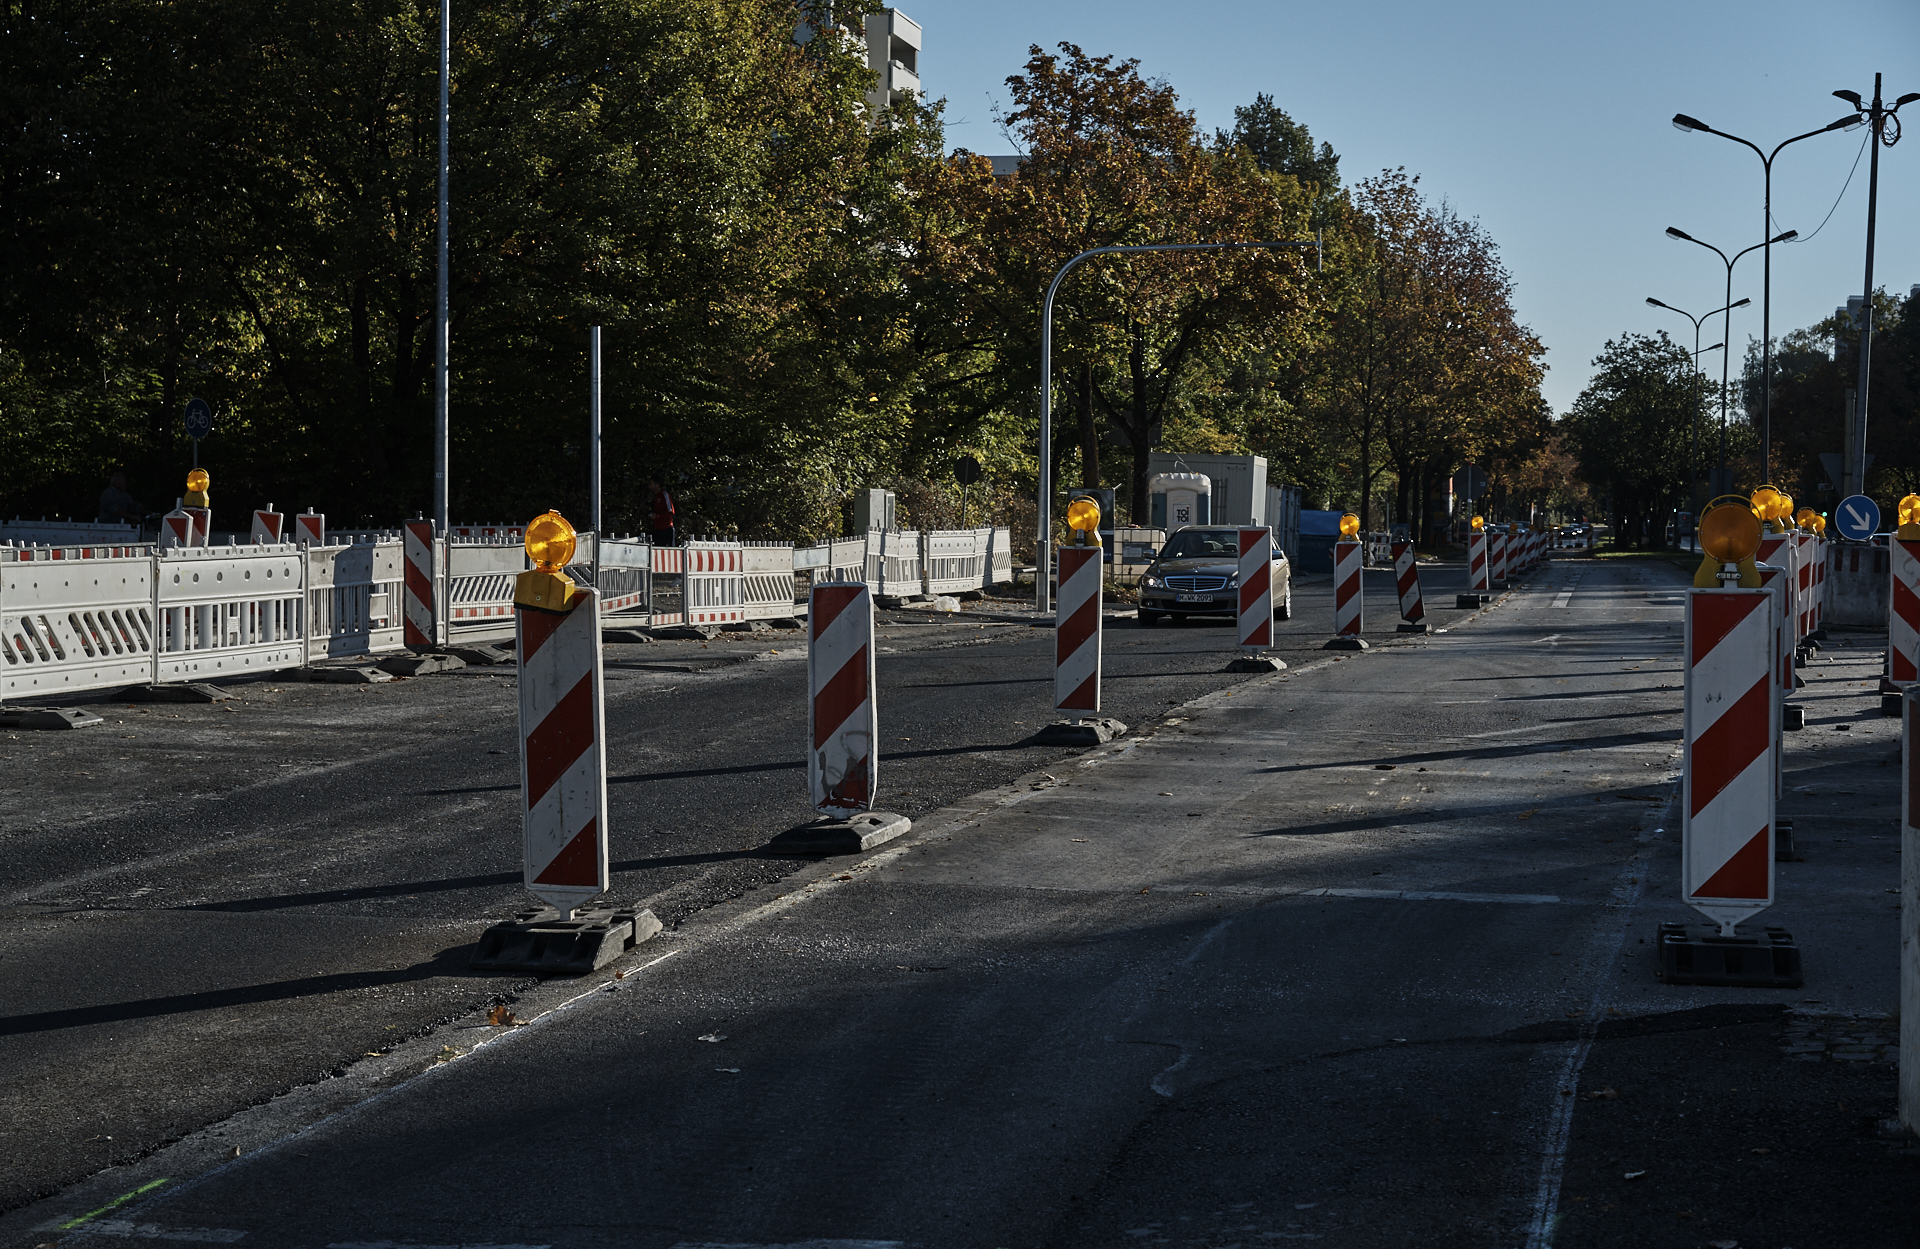 #Karl-Marx-Ring, #Heinrich-Wieland-Straße, #Baustelle, #Straßenarbeiten, #Bushaltestelle, #Wendeschleife